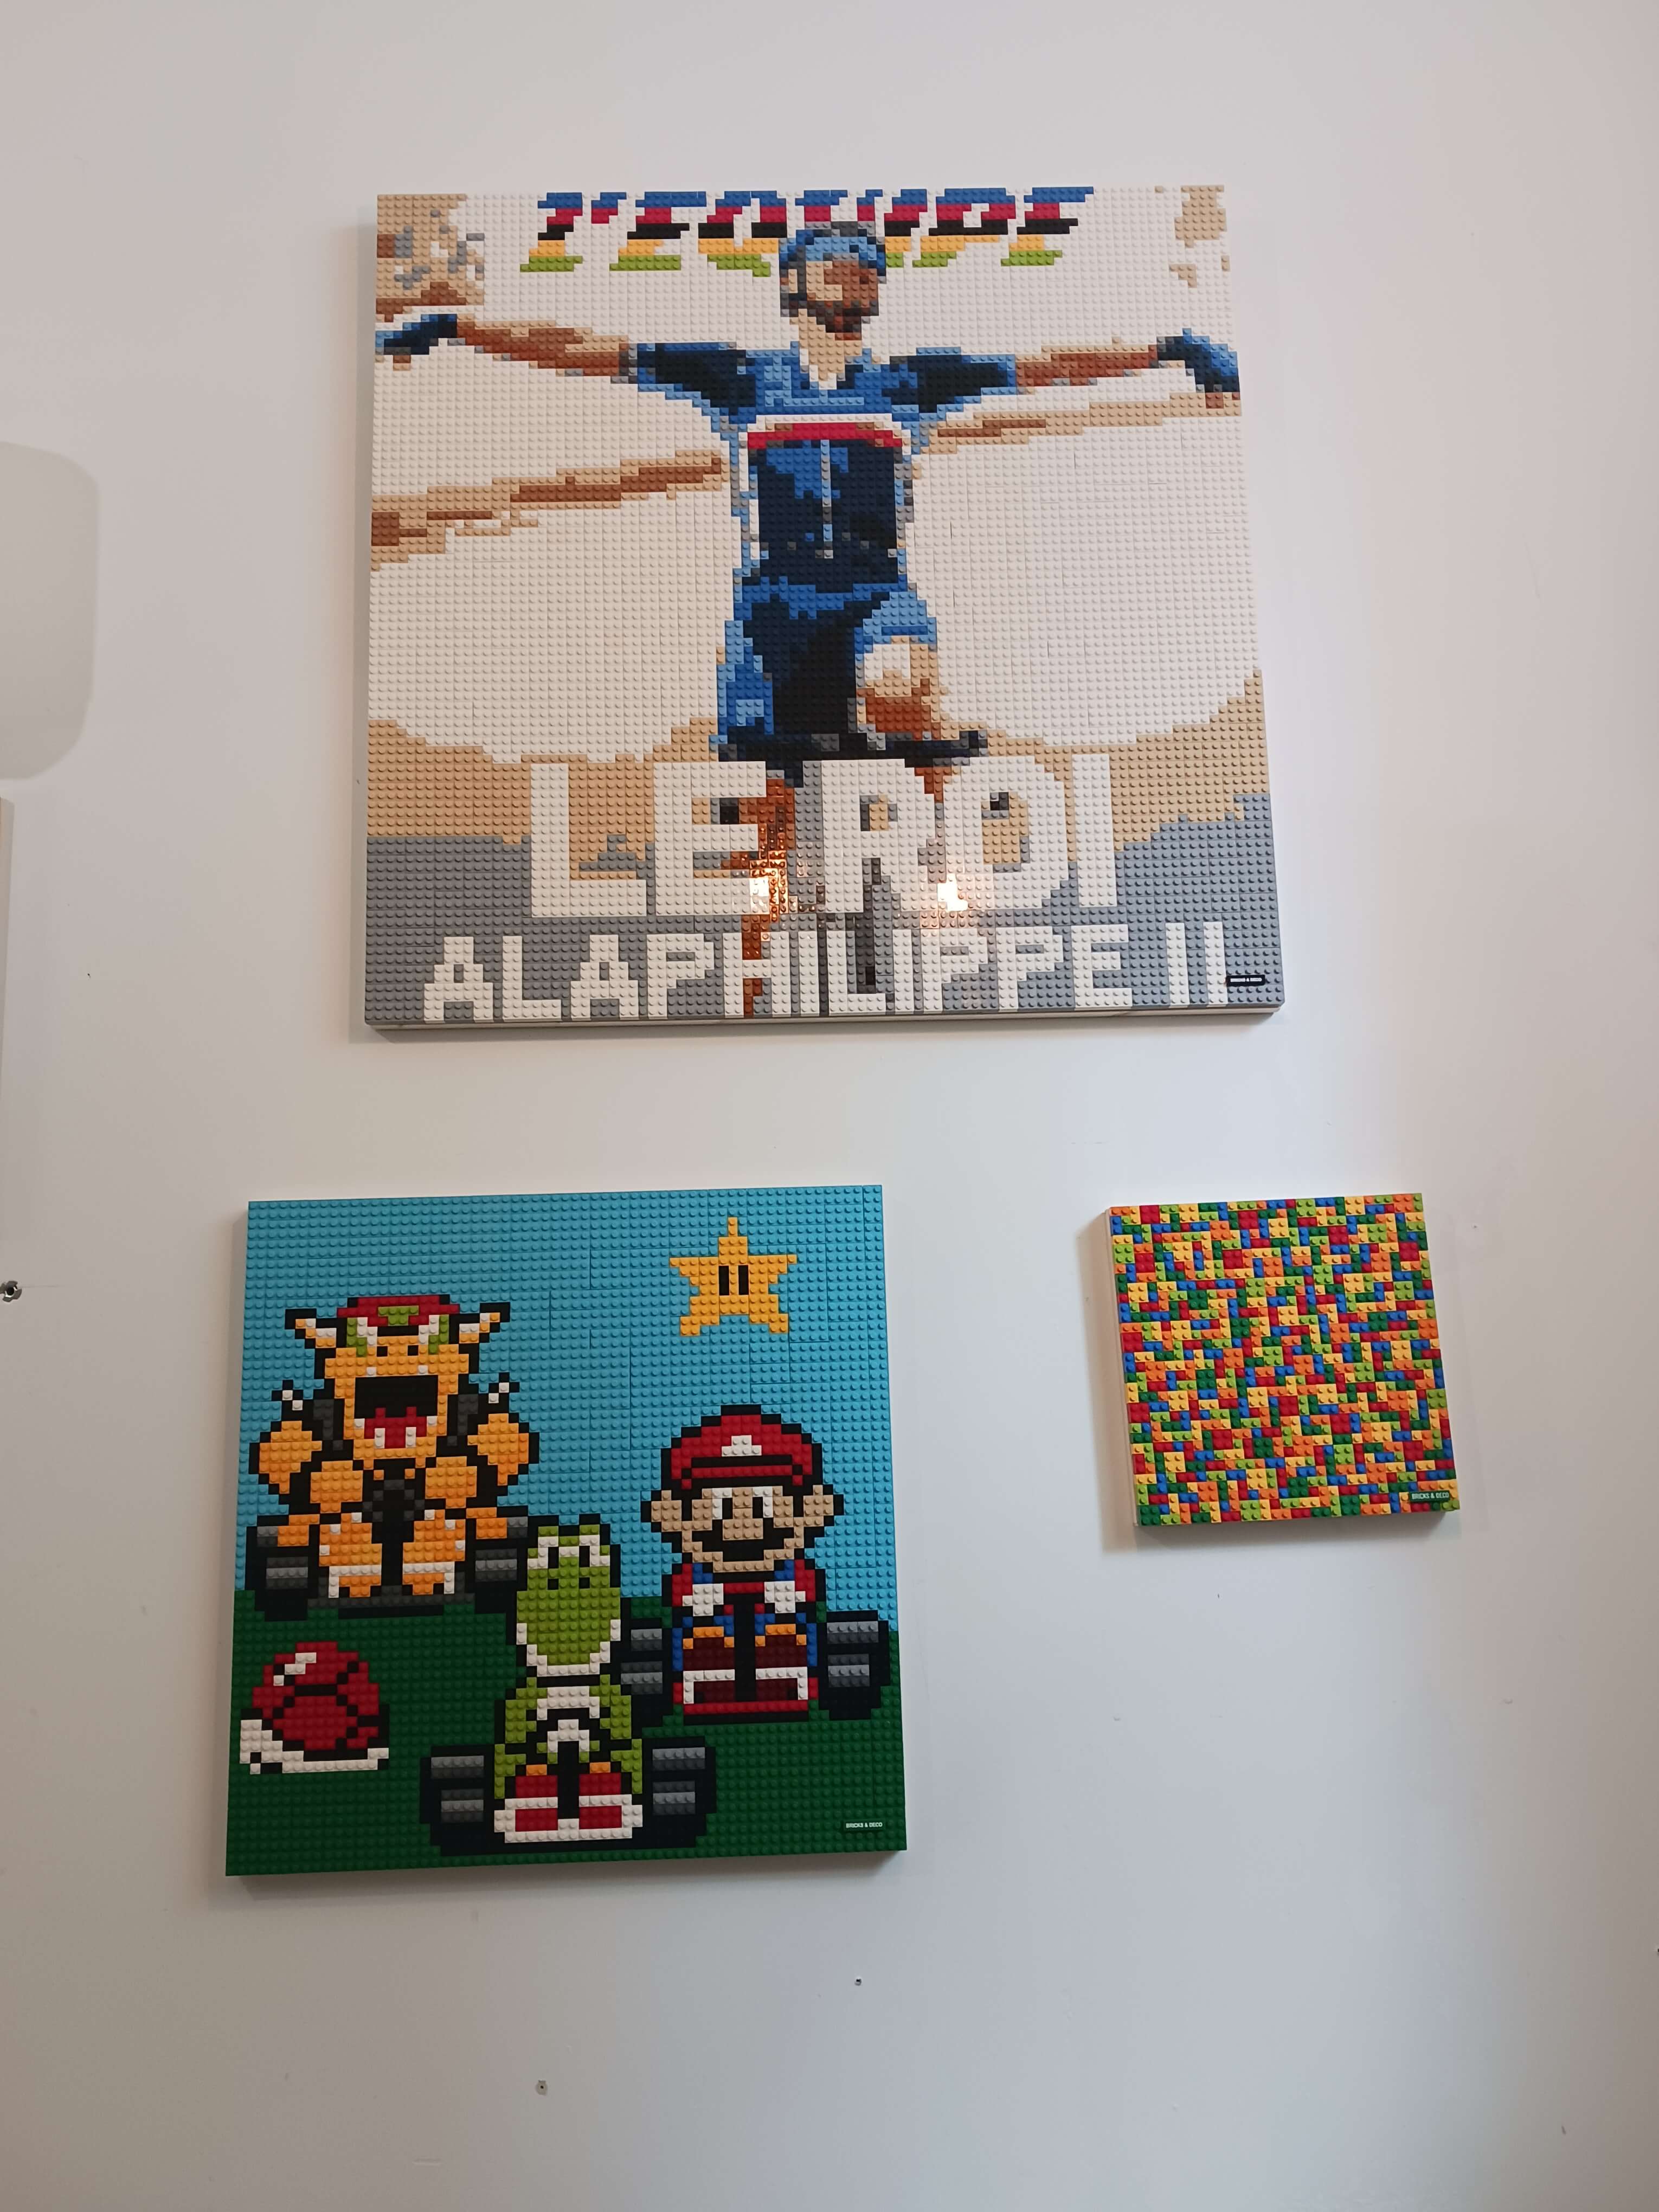 Exposition de Lego par Alexis Guimet - Triptique